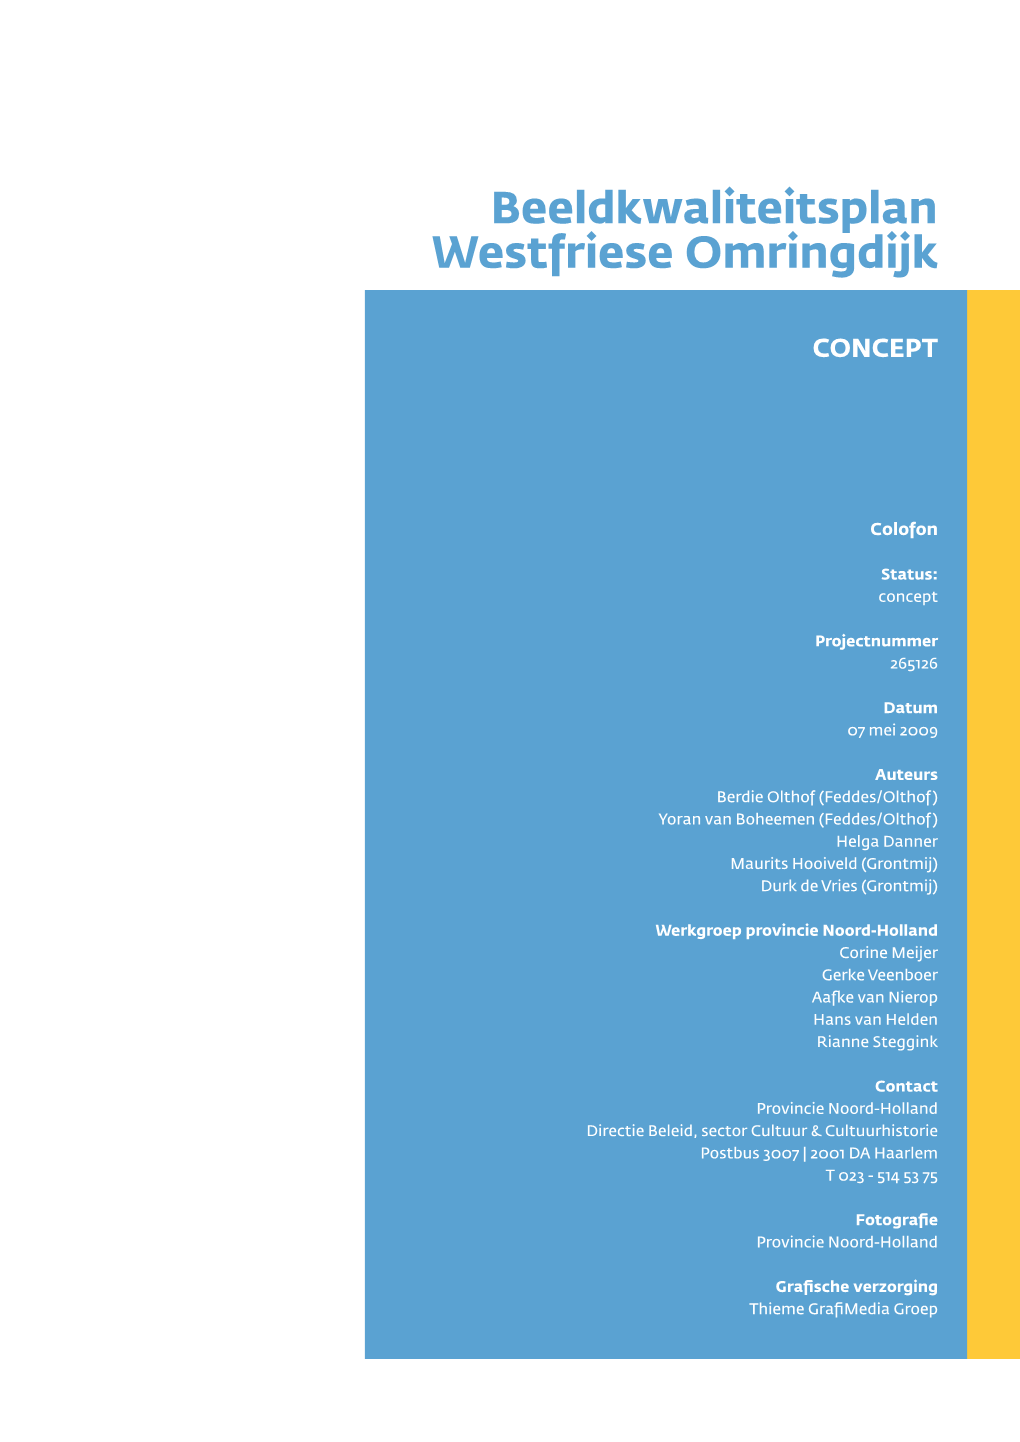 Beeldkwaliteitsplan Westfriese Omringdijk